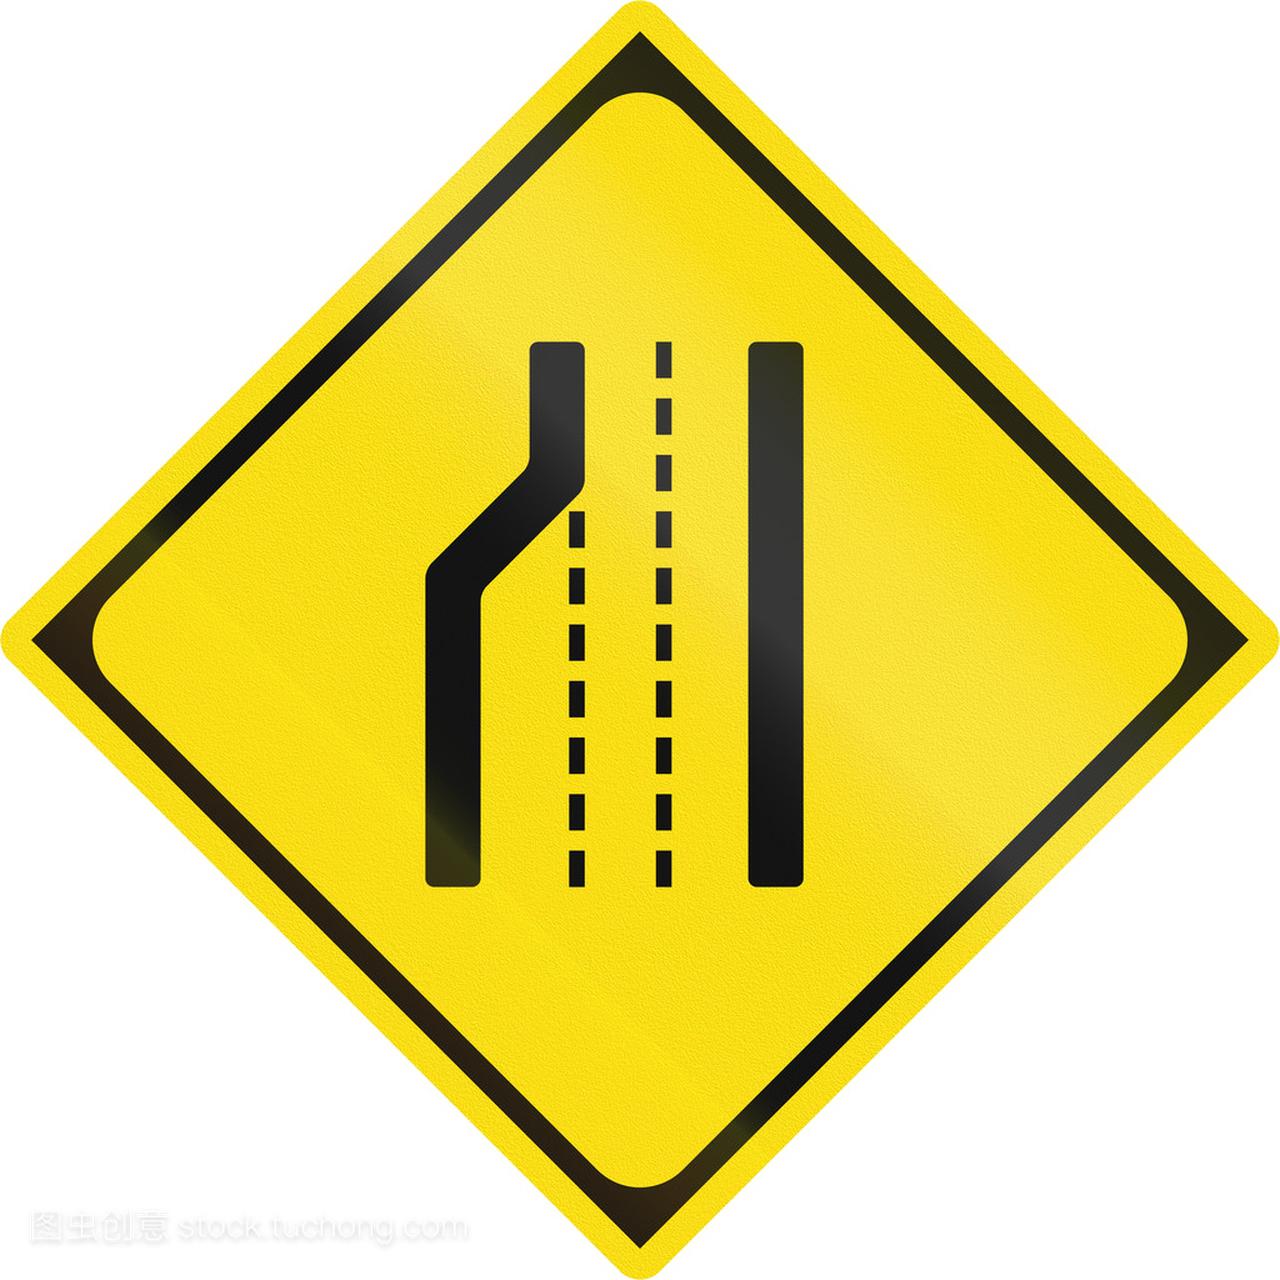 Japanese warning road sign - Lane decrease